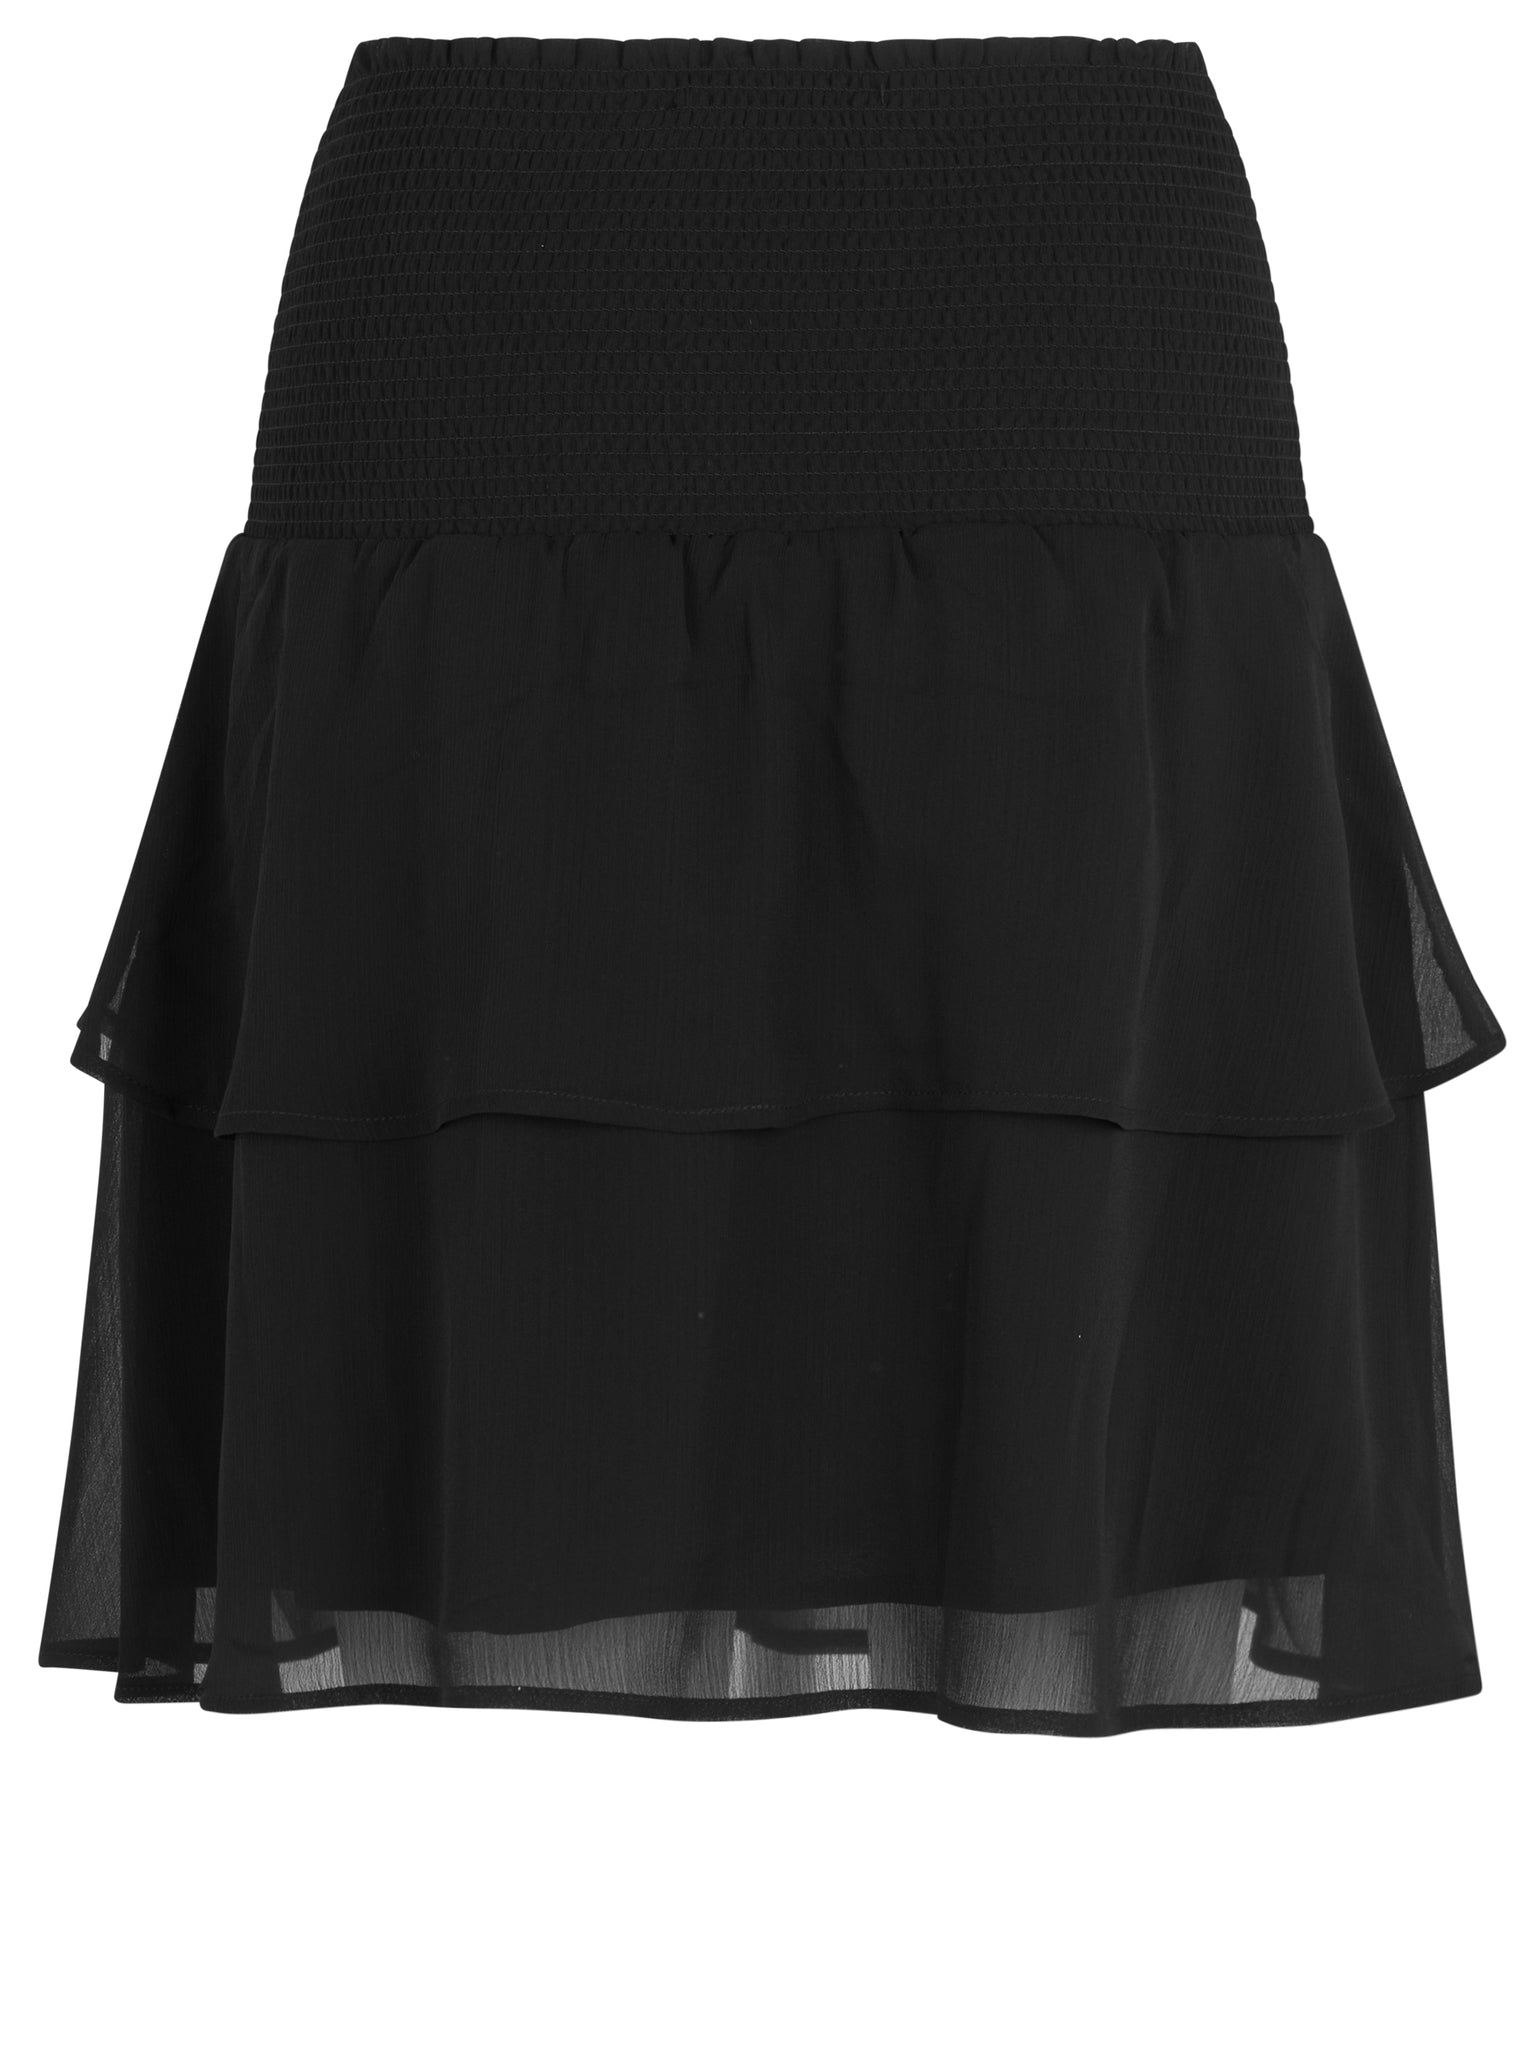 Layered skirt